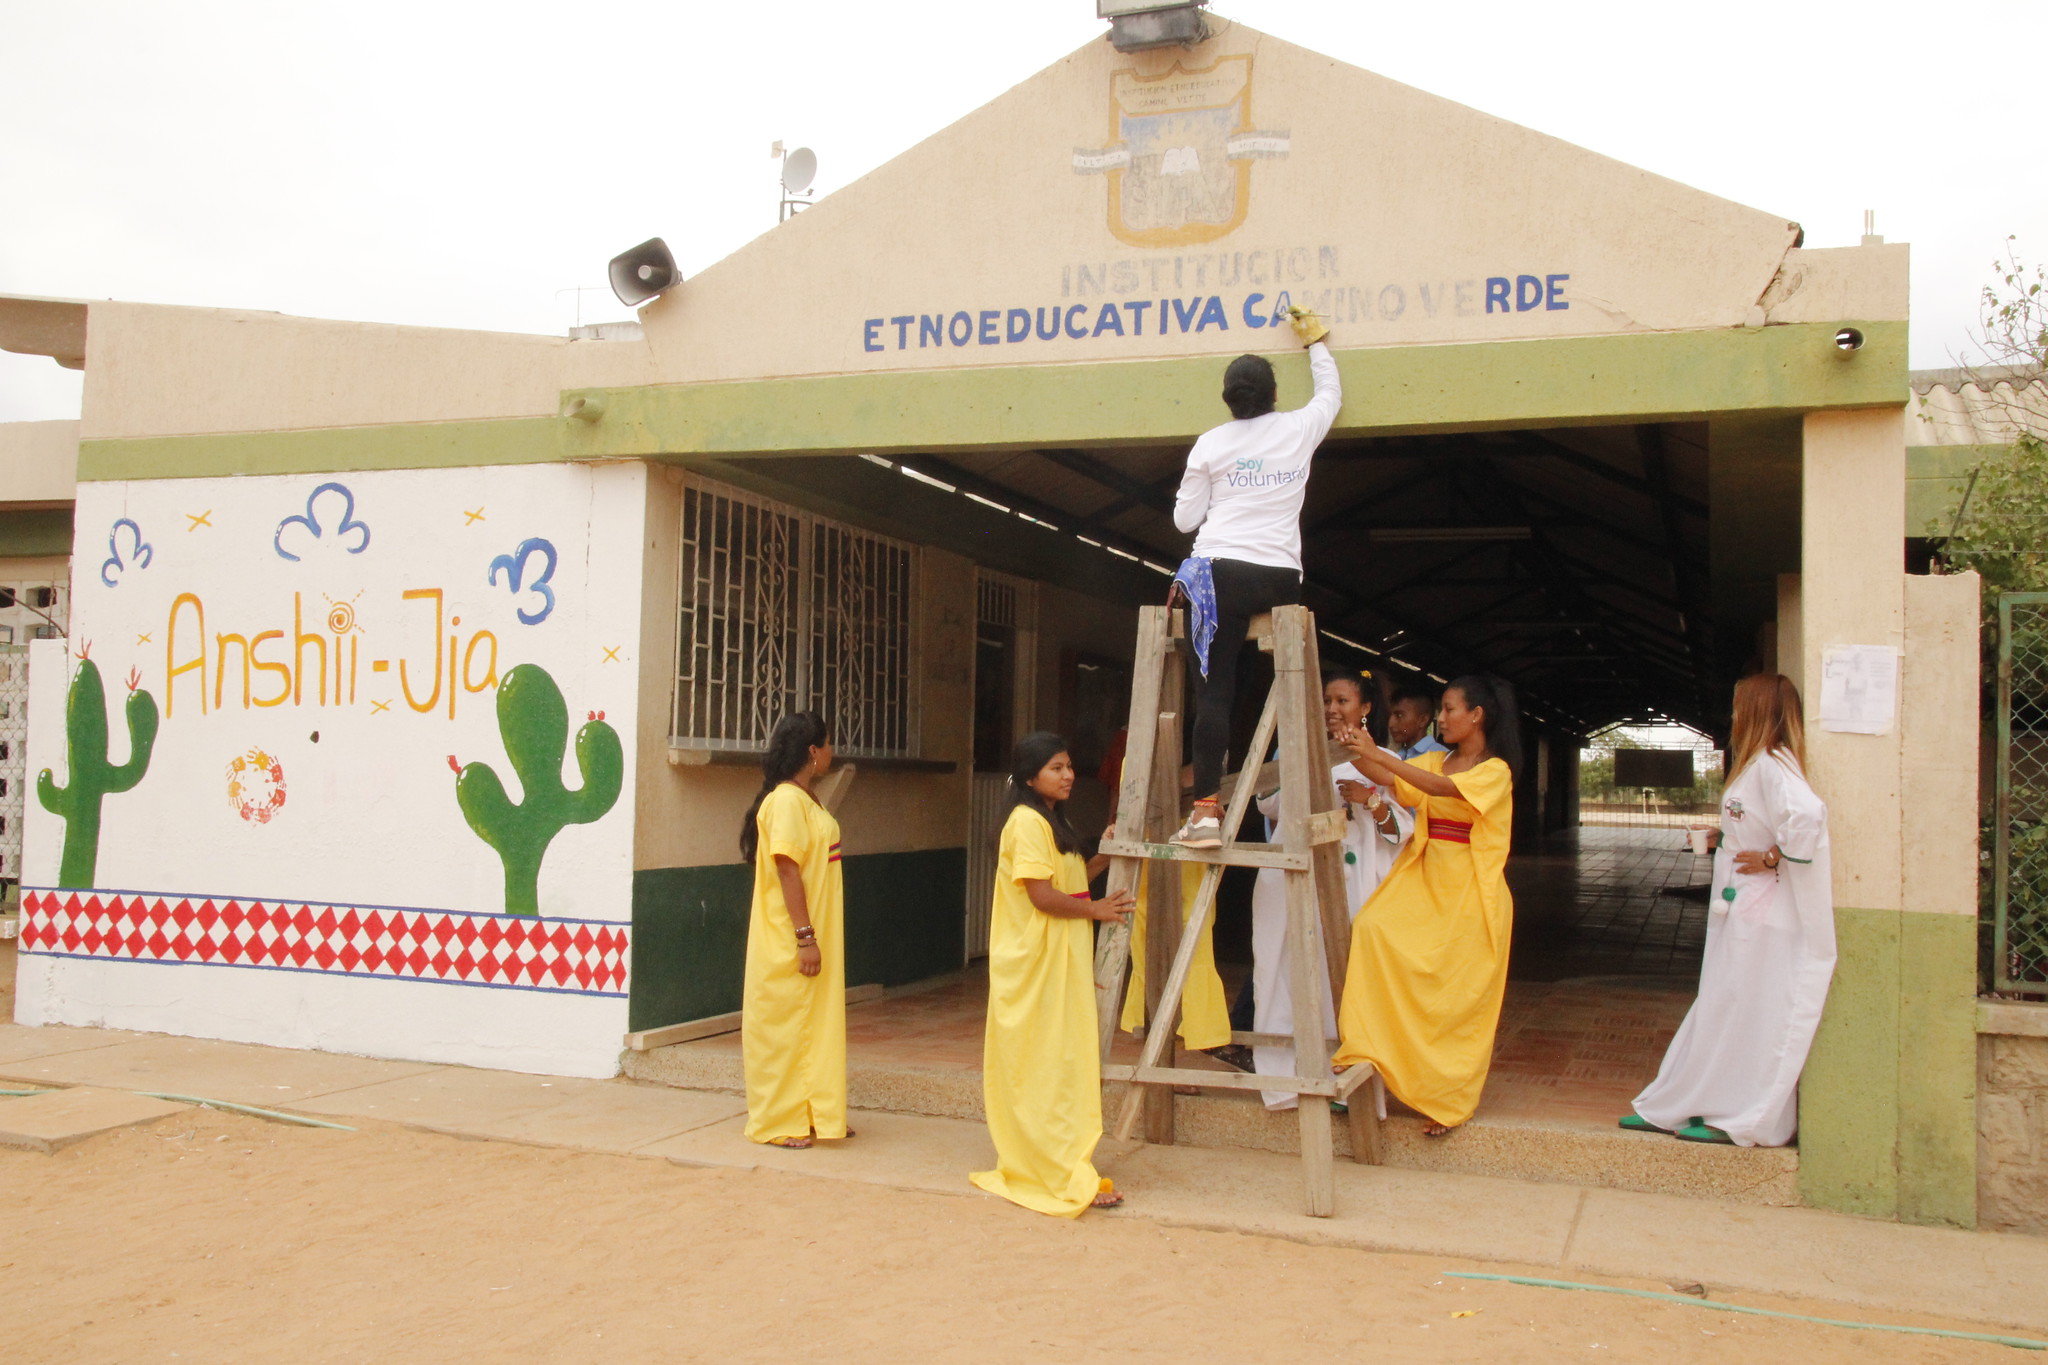 Vamos Guajira. Programa de la Fundación ANDI. Foto: Fundación ANDI.